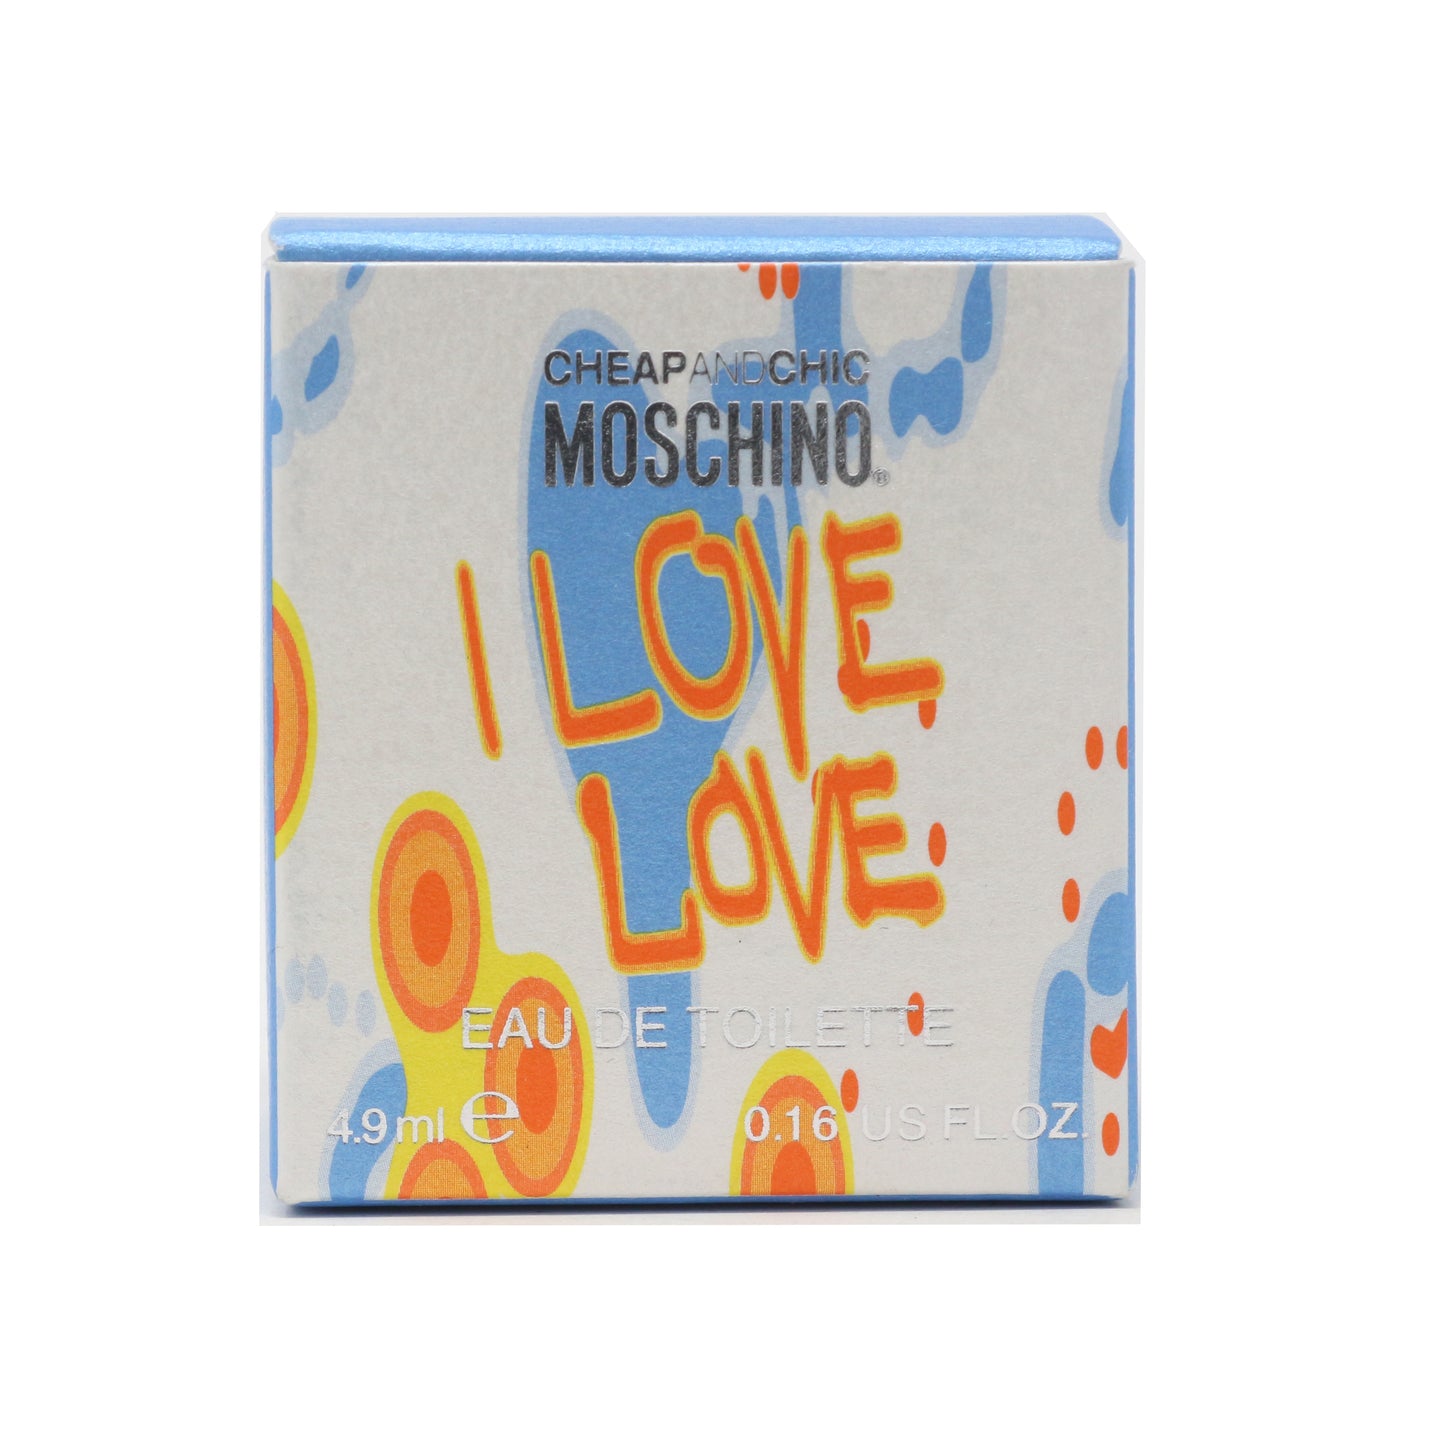 Moschino I Love Love Cheap And Chic Eau De Toilette 0.16oz/4.9ml New In Box